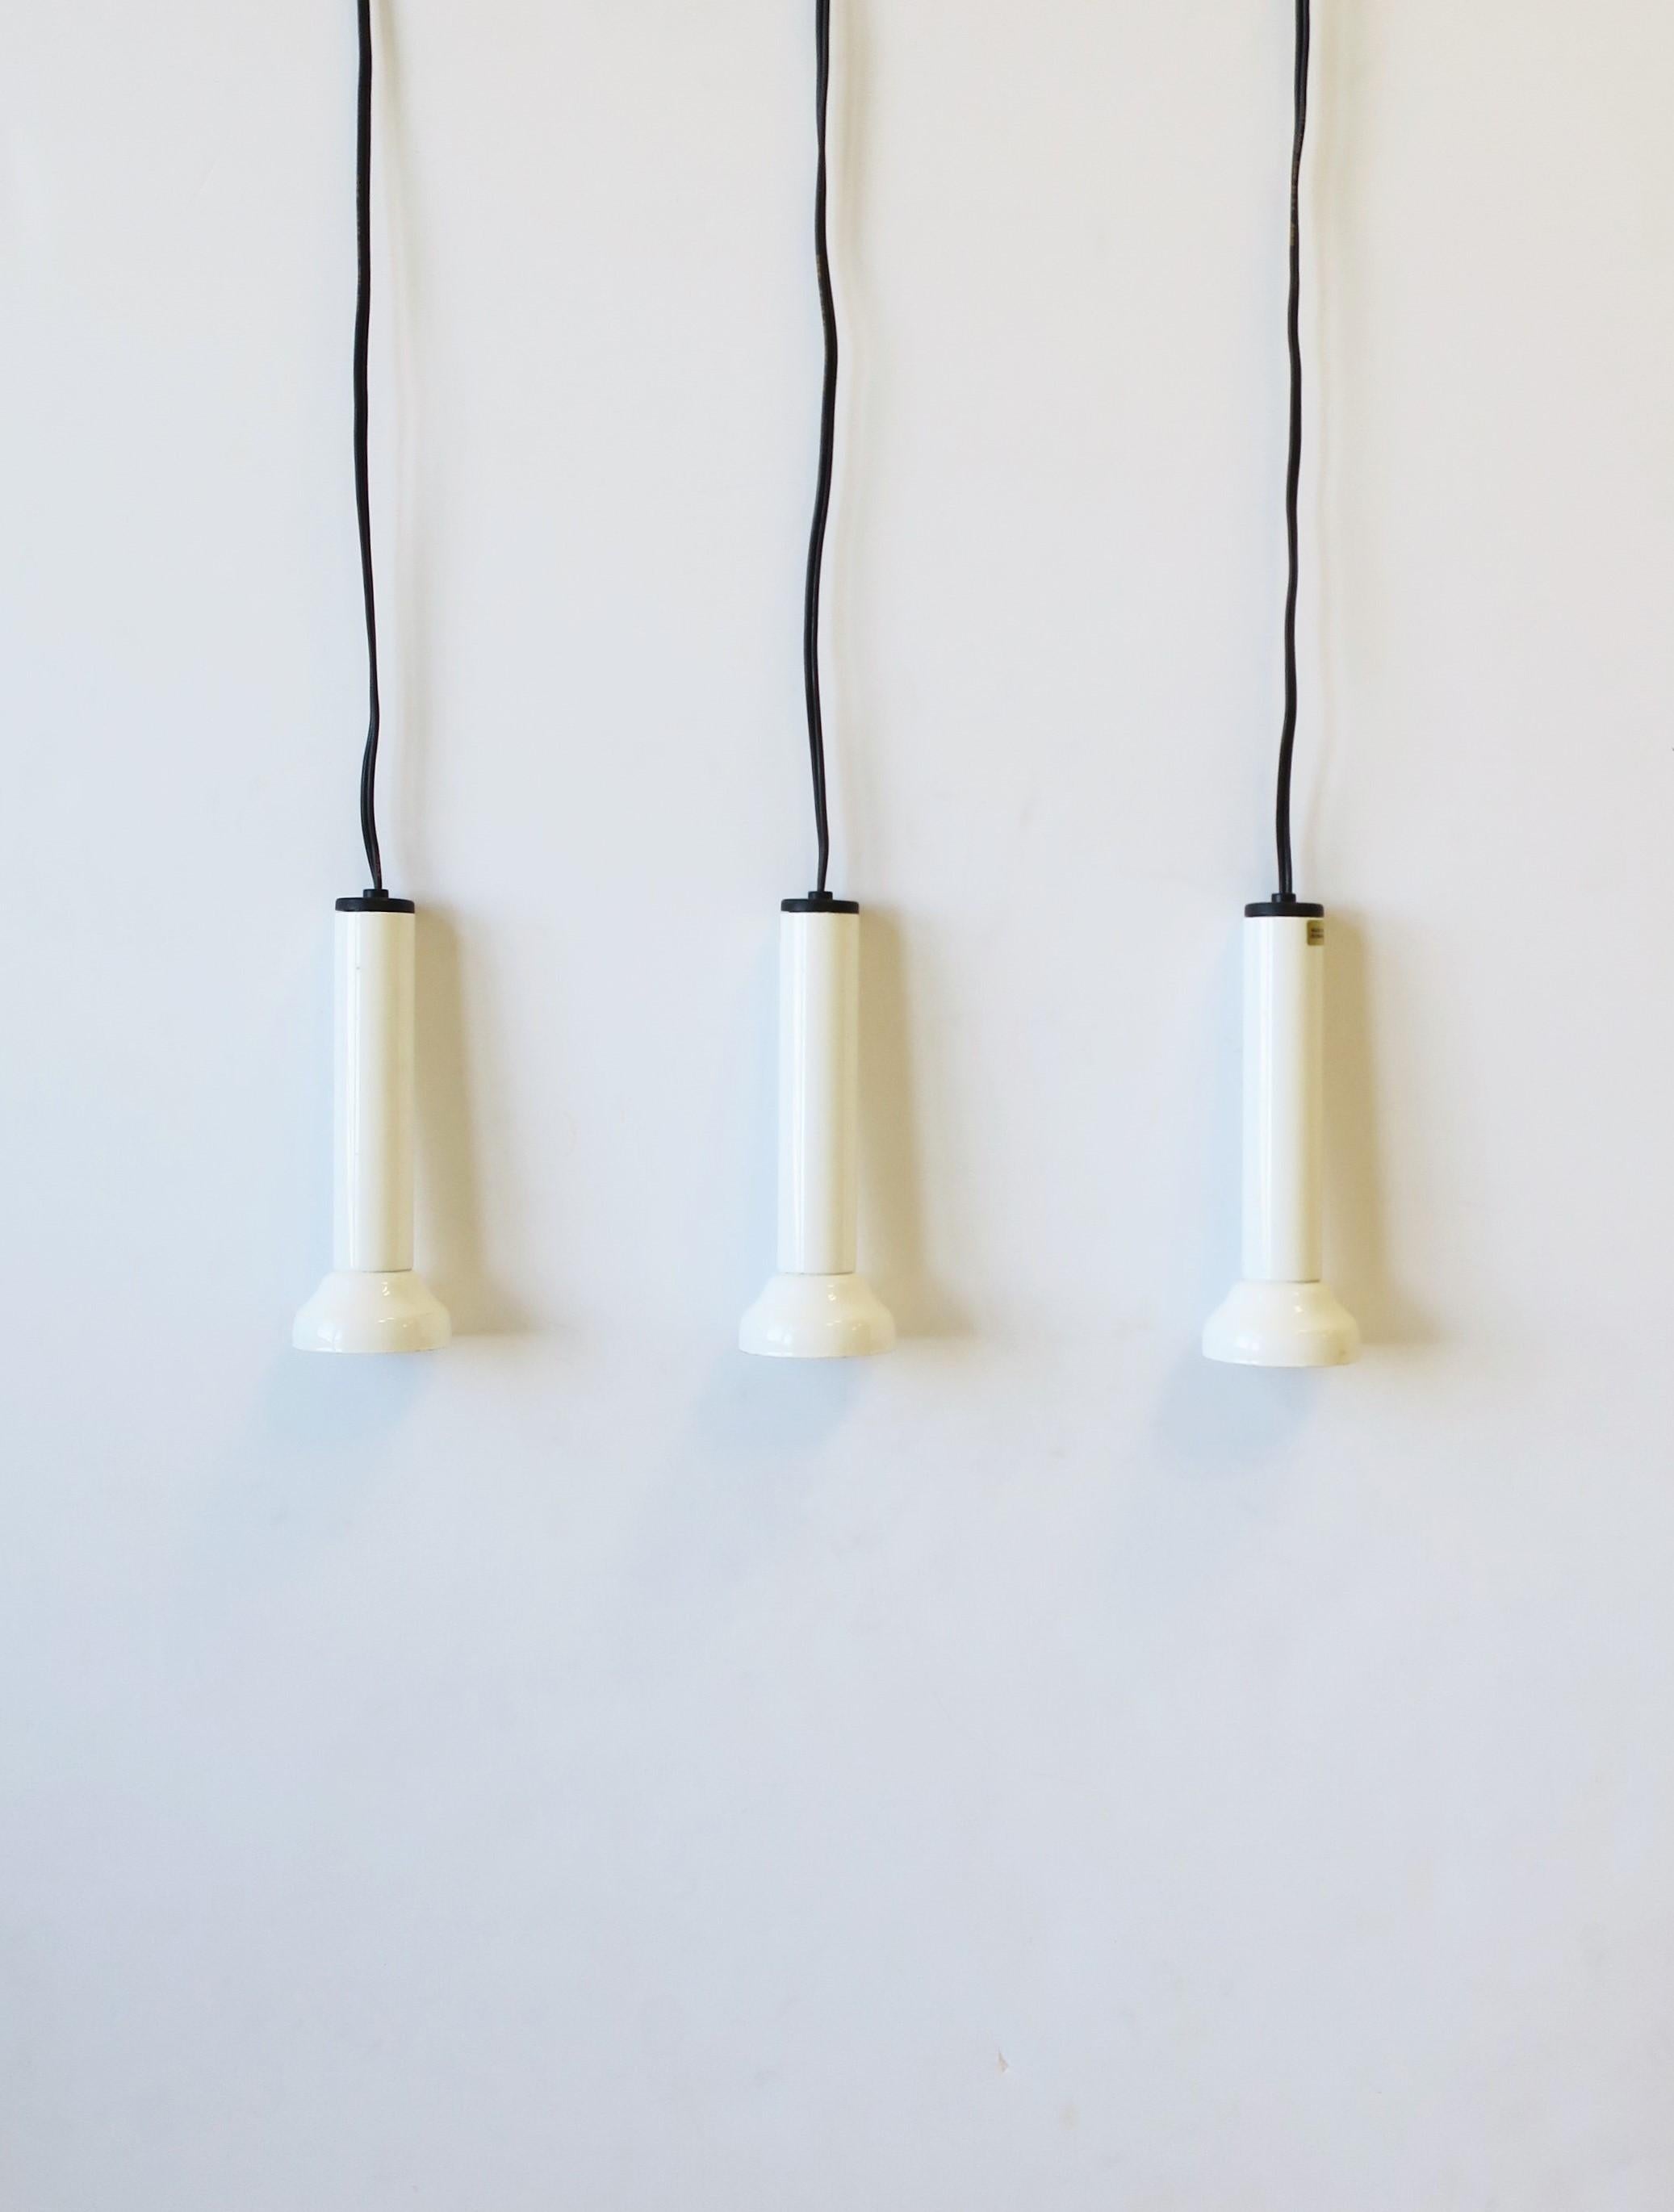 Un ensemble de trois (3) lampes suspendues postmodernes danoises en émail blanc brillant par Nordlux, vers la fin du 20e siècle, Danemark. Ils portent tous la mention 